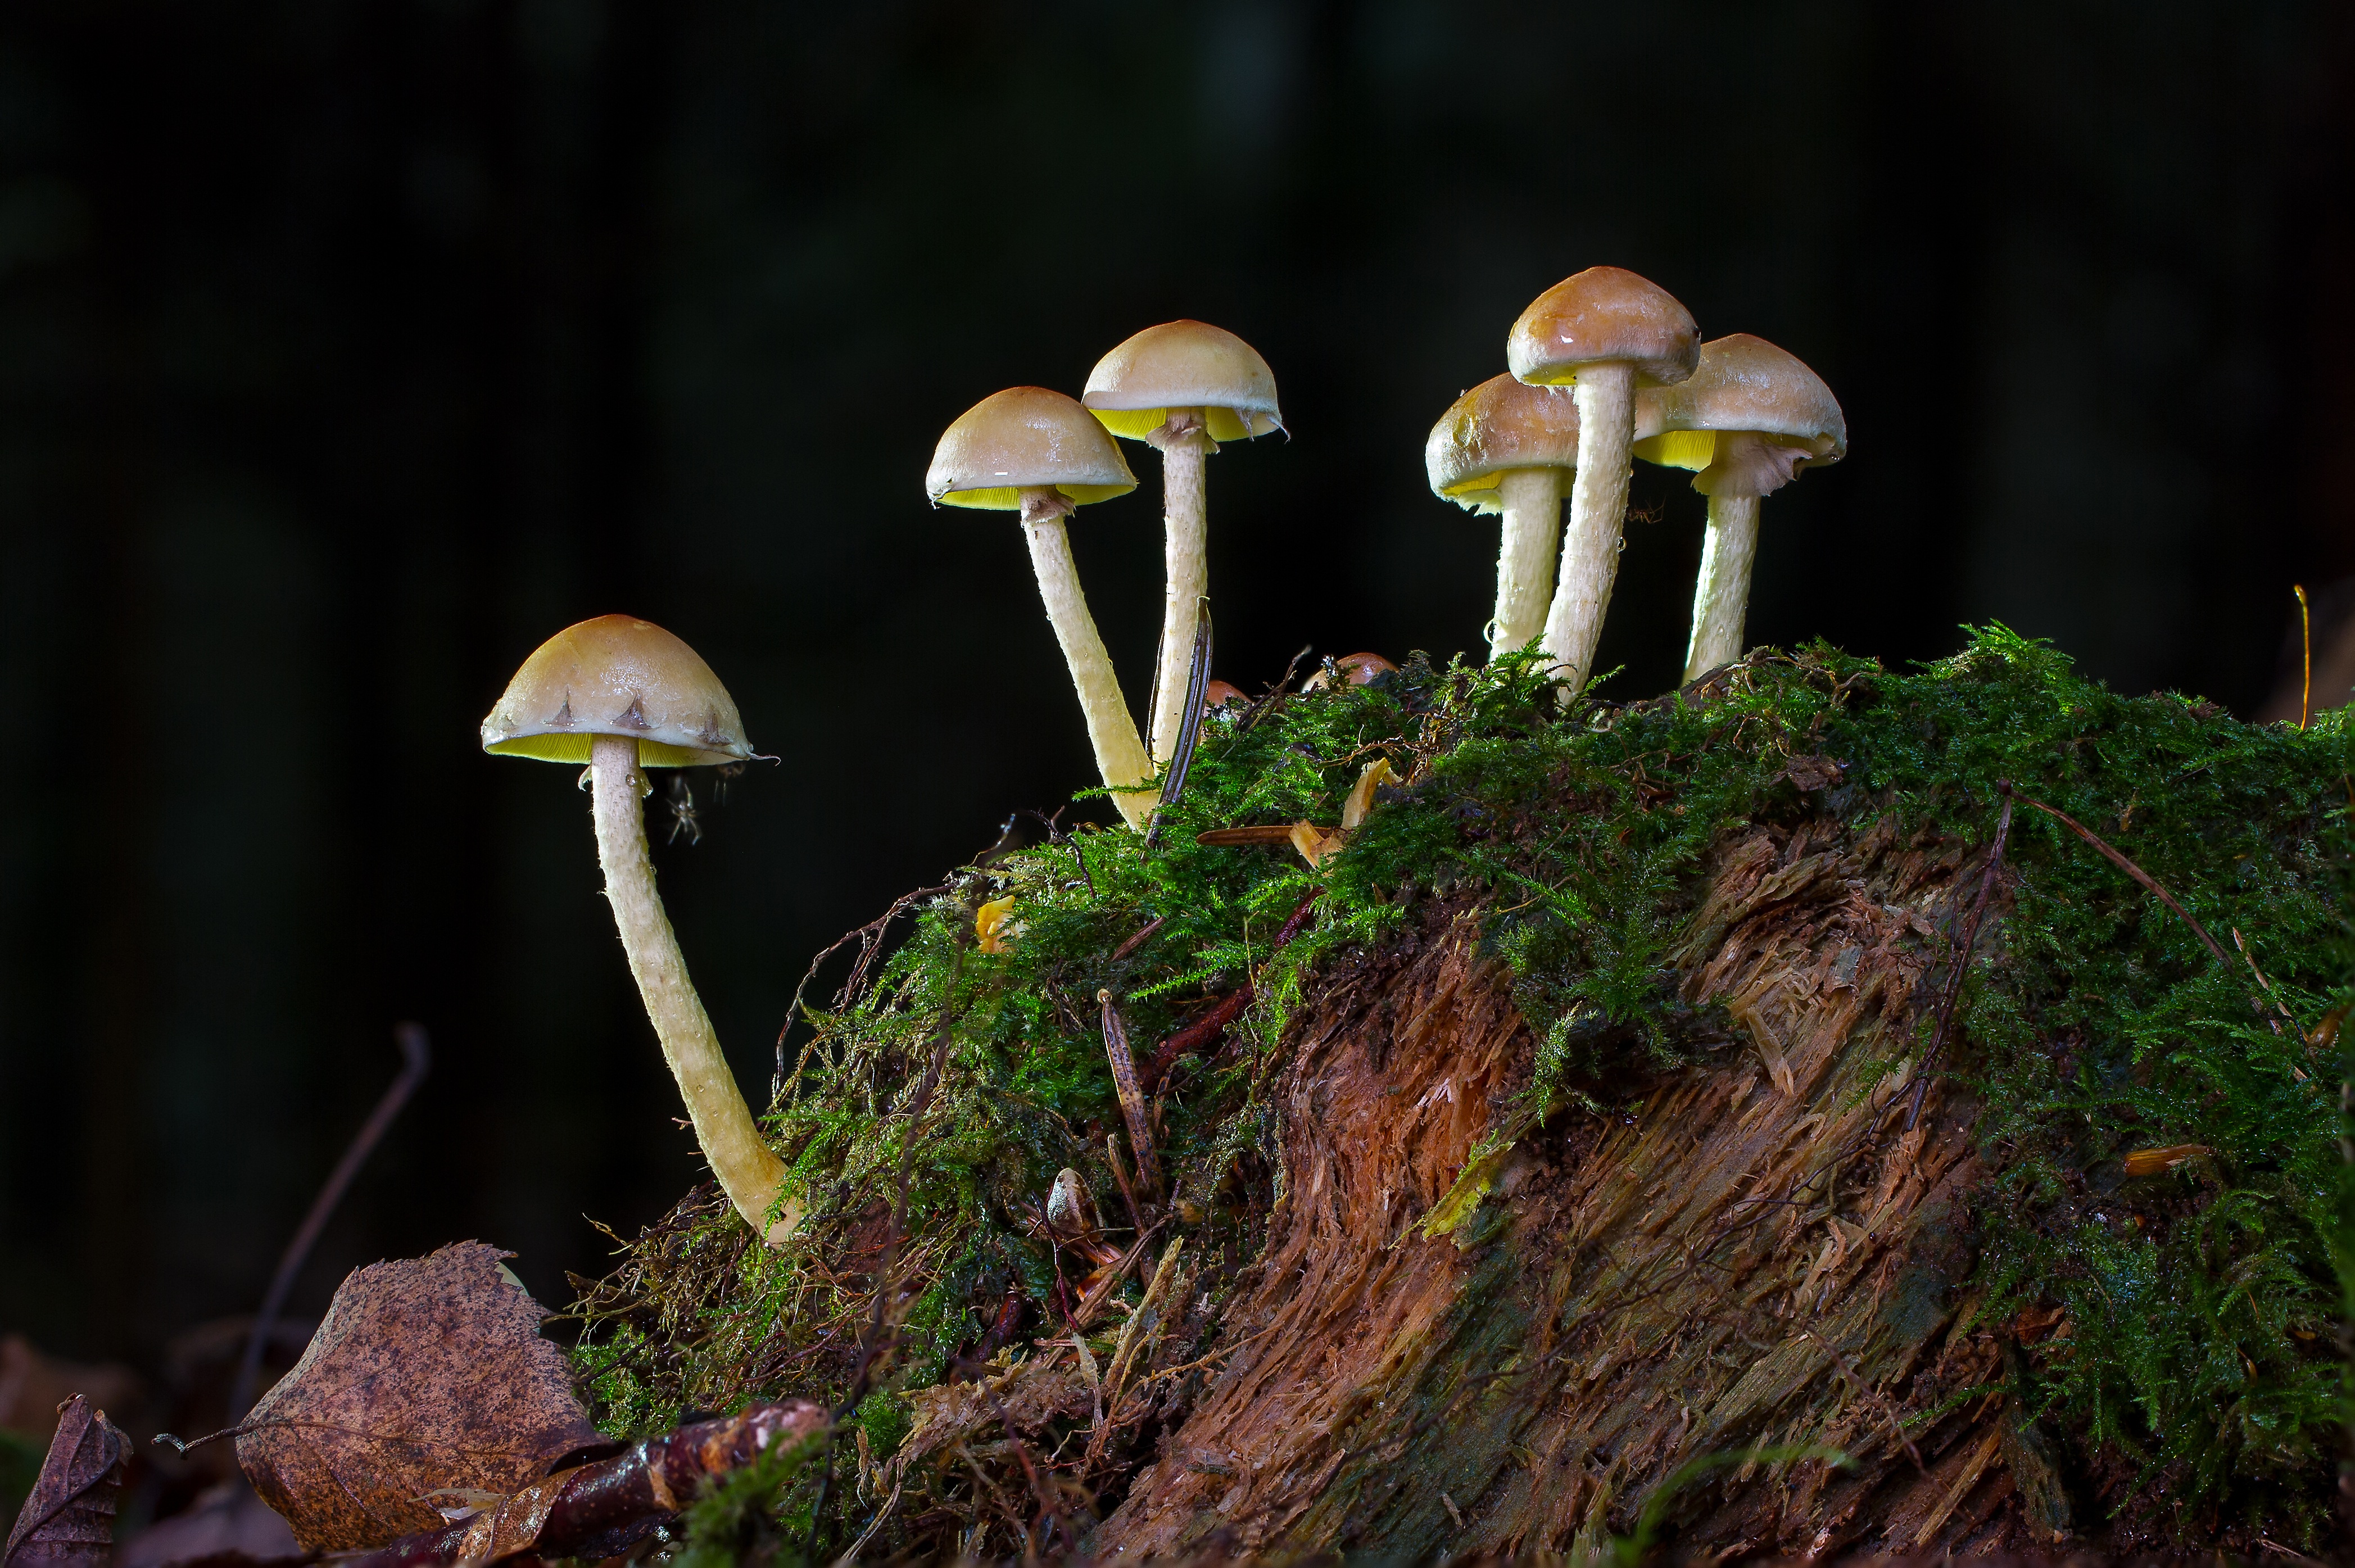 Tiny Mushrooms on a Tree Stump by adege